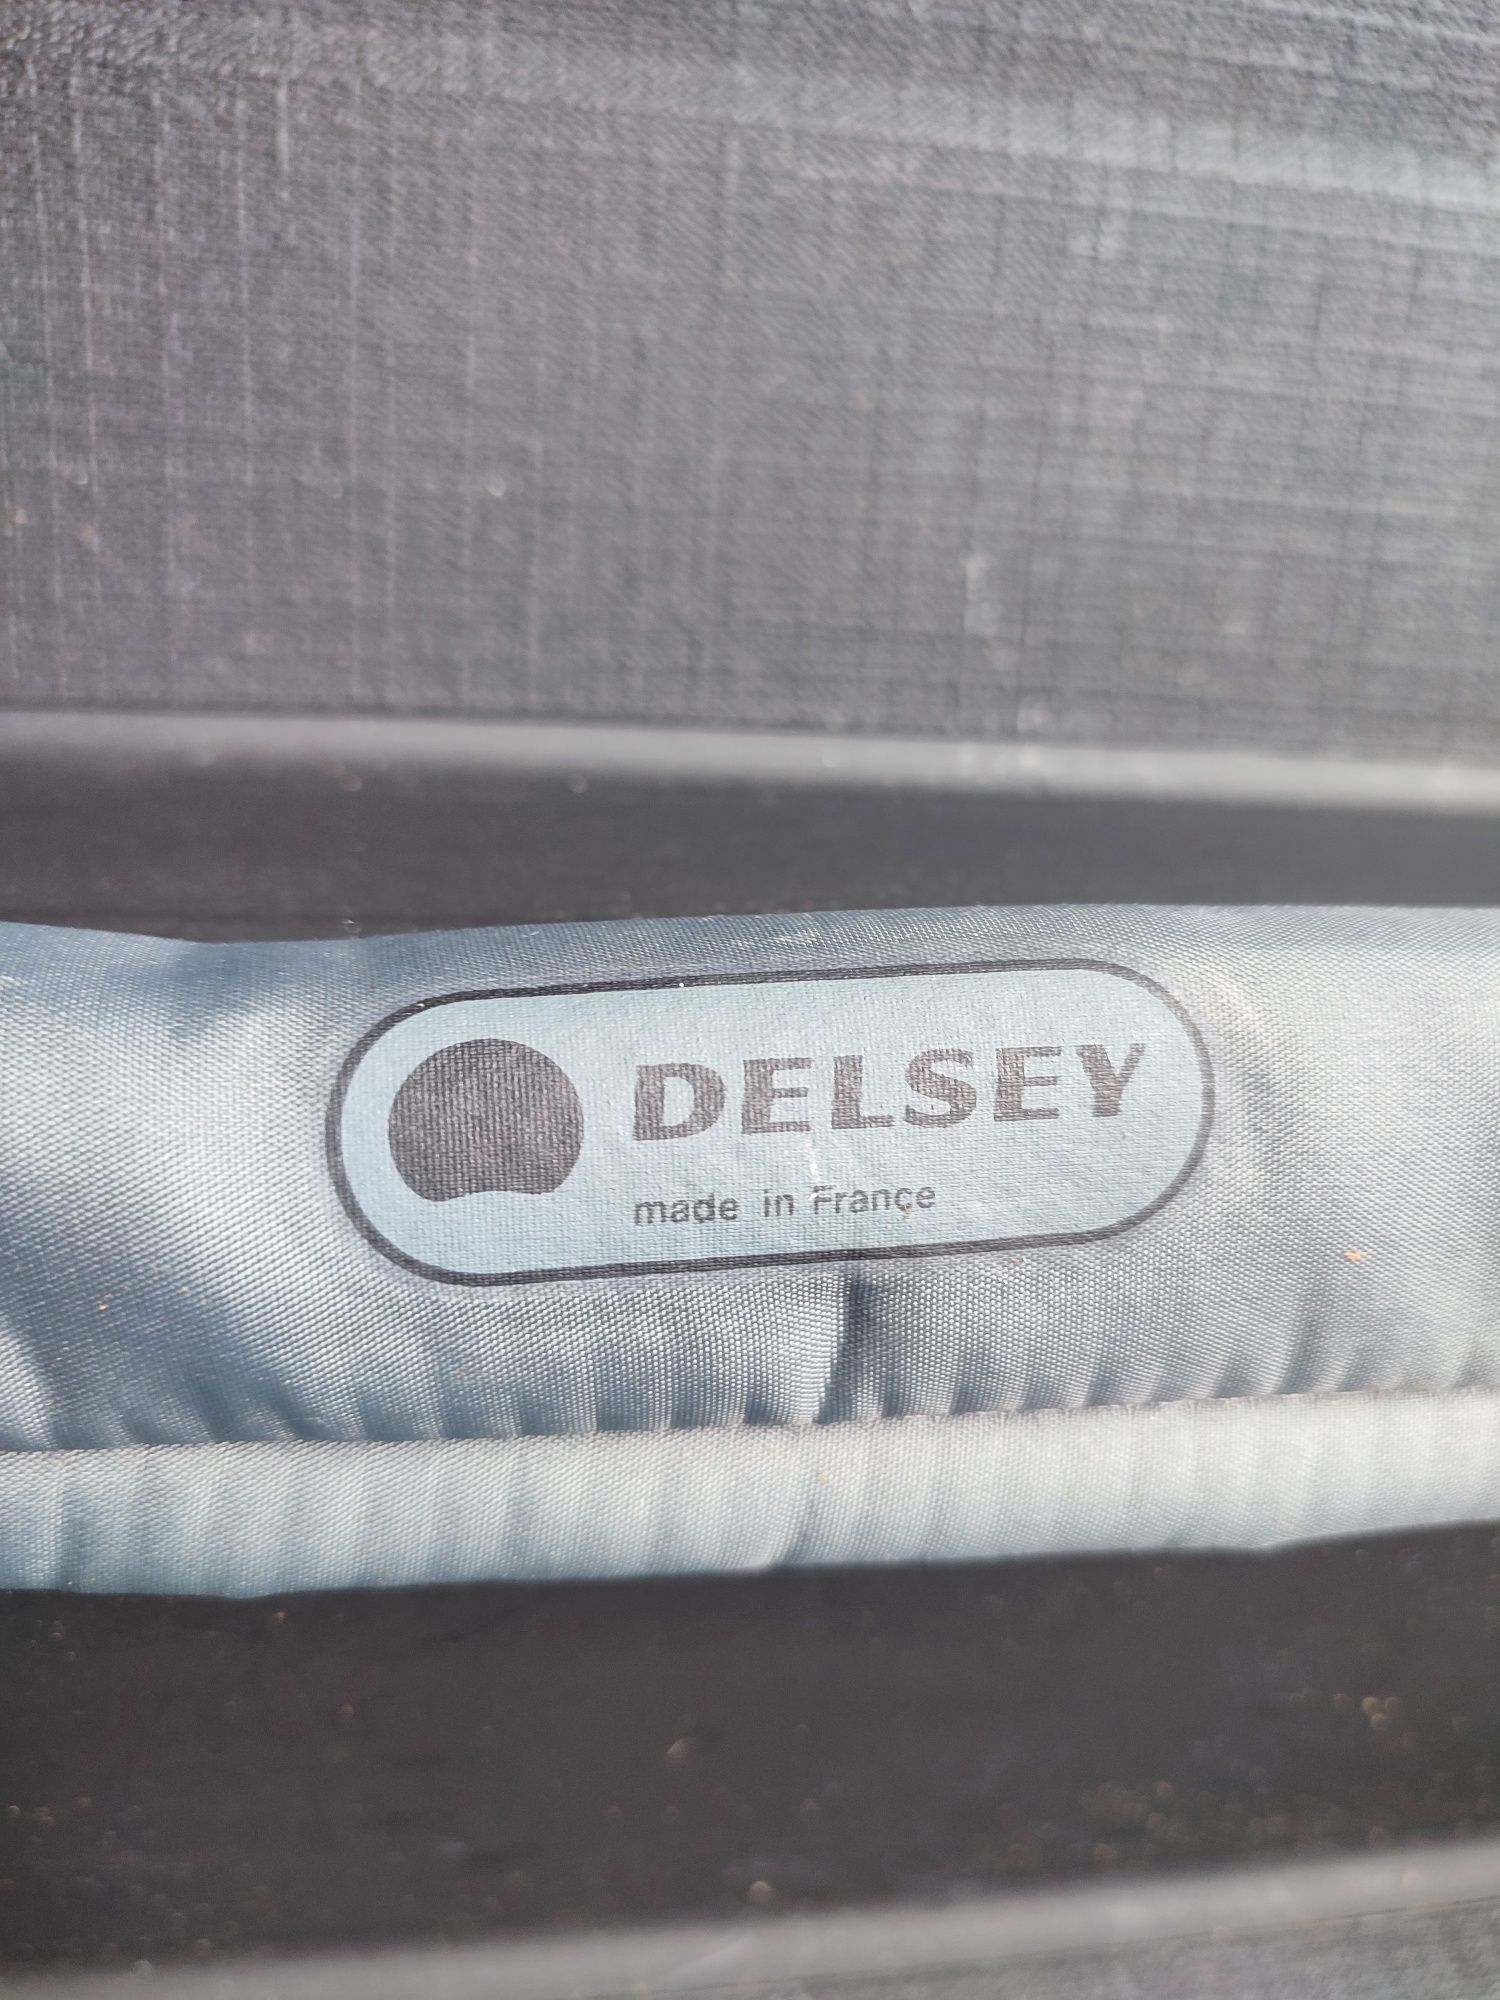 Walizka plastikowa francuskiej firmy Delsey(kluczyk)